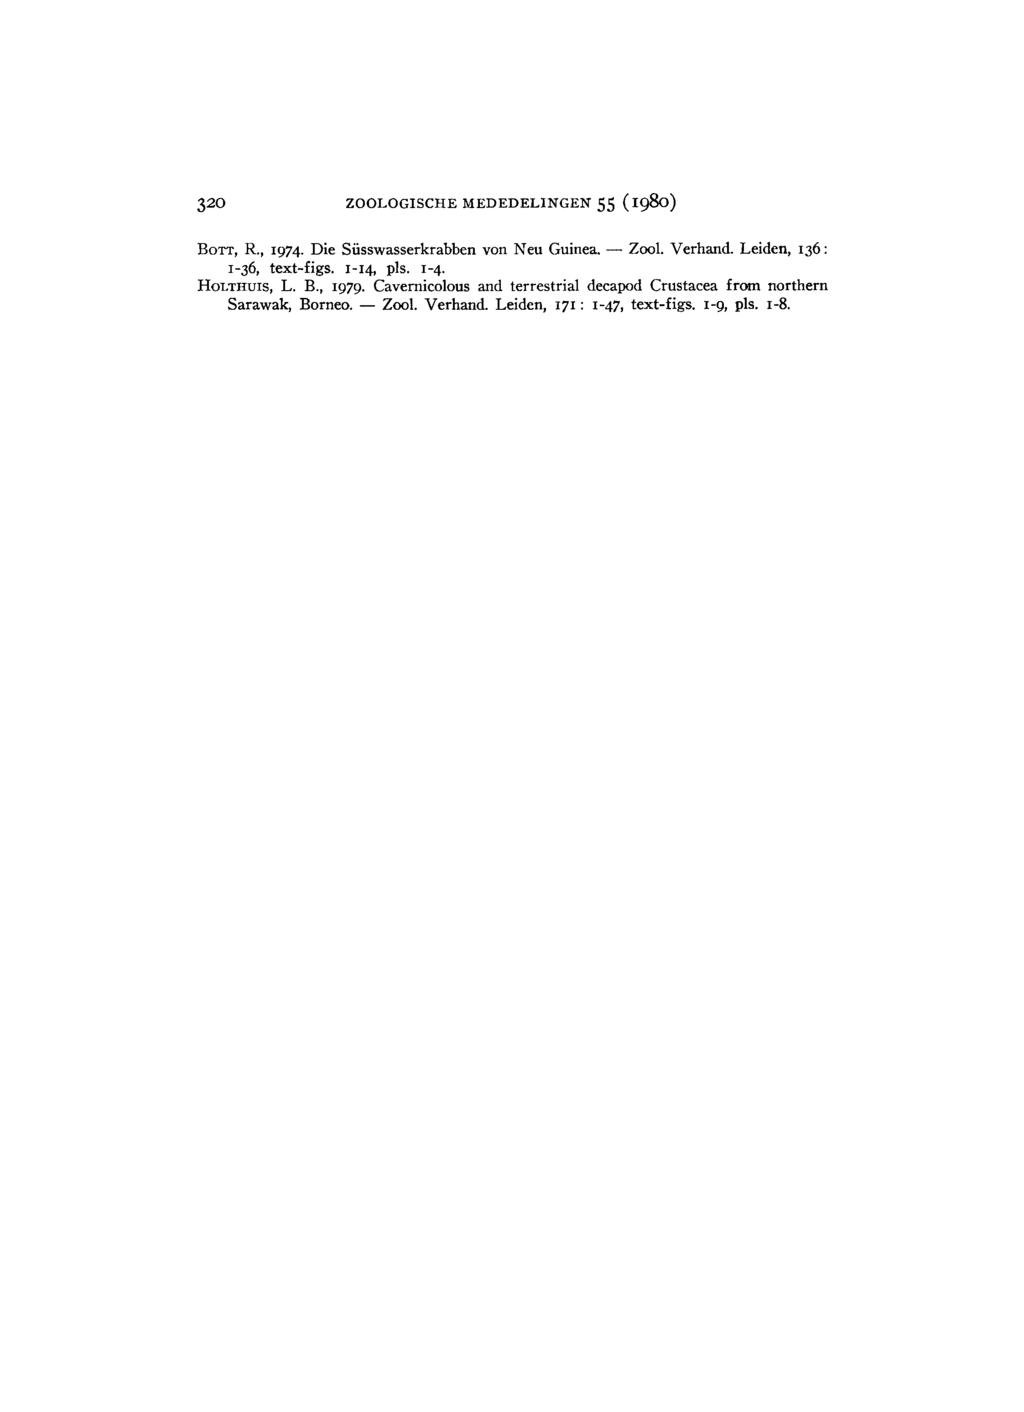 320 ZOOLOGISCHE M E D E D E L I N G E N 55 (1980) BOTT, R., 1974. Die Süsswasserkrabben von Neu Guinea. Zool. Verhand. Leiden, 136 : 1-36, text-figs. 1-14, pis.